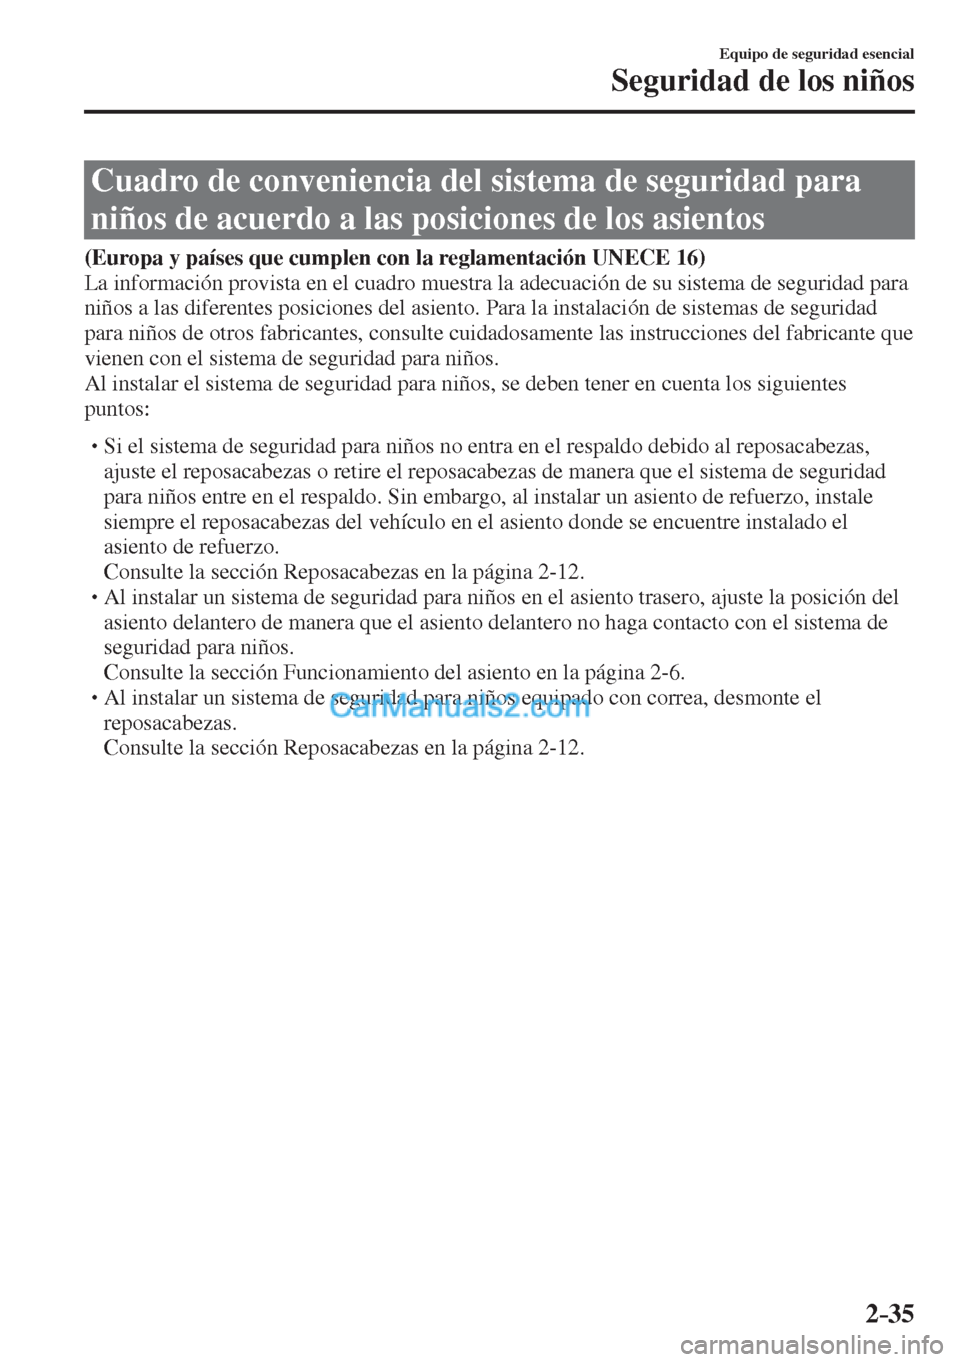 MAZDA MODEL 2 2017  Manual del propietario (in Spanish) 2–35
Equipo de seguridad esencial
Seguridad de los niños
 Cuadro de conveniencia del sistema de seguridad para 
niños de acuerdo a las posiciones de los asientos
              (Europa y países qu